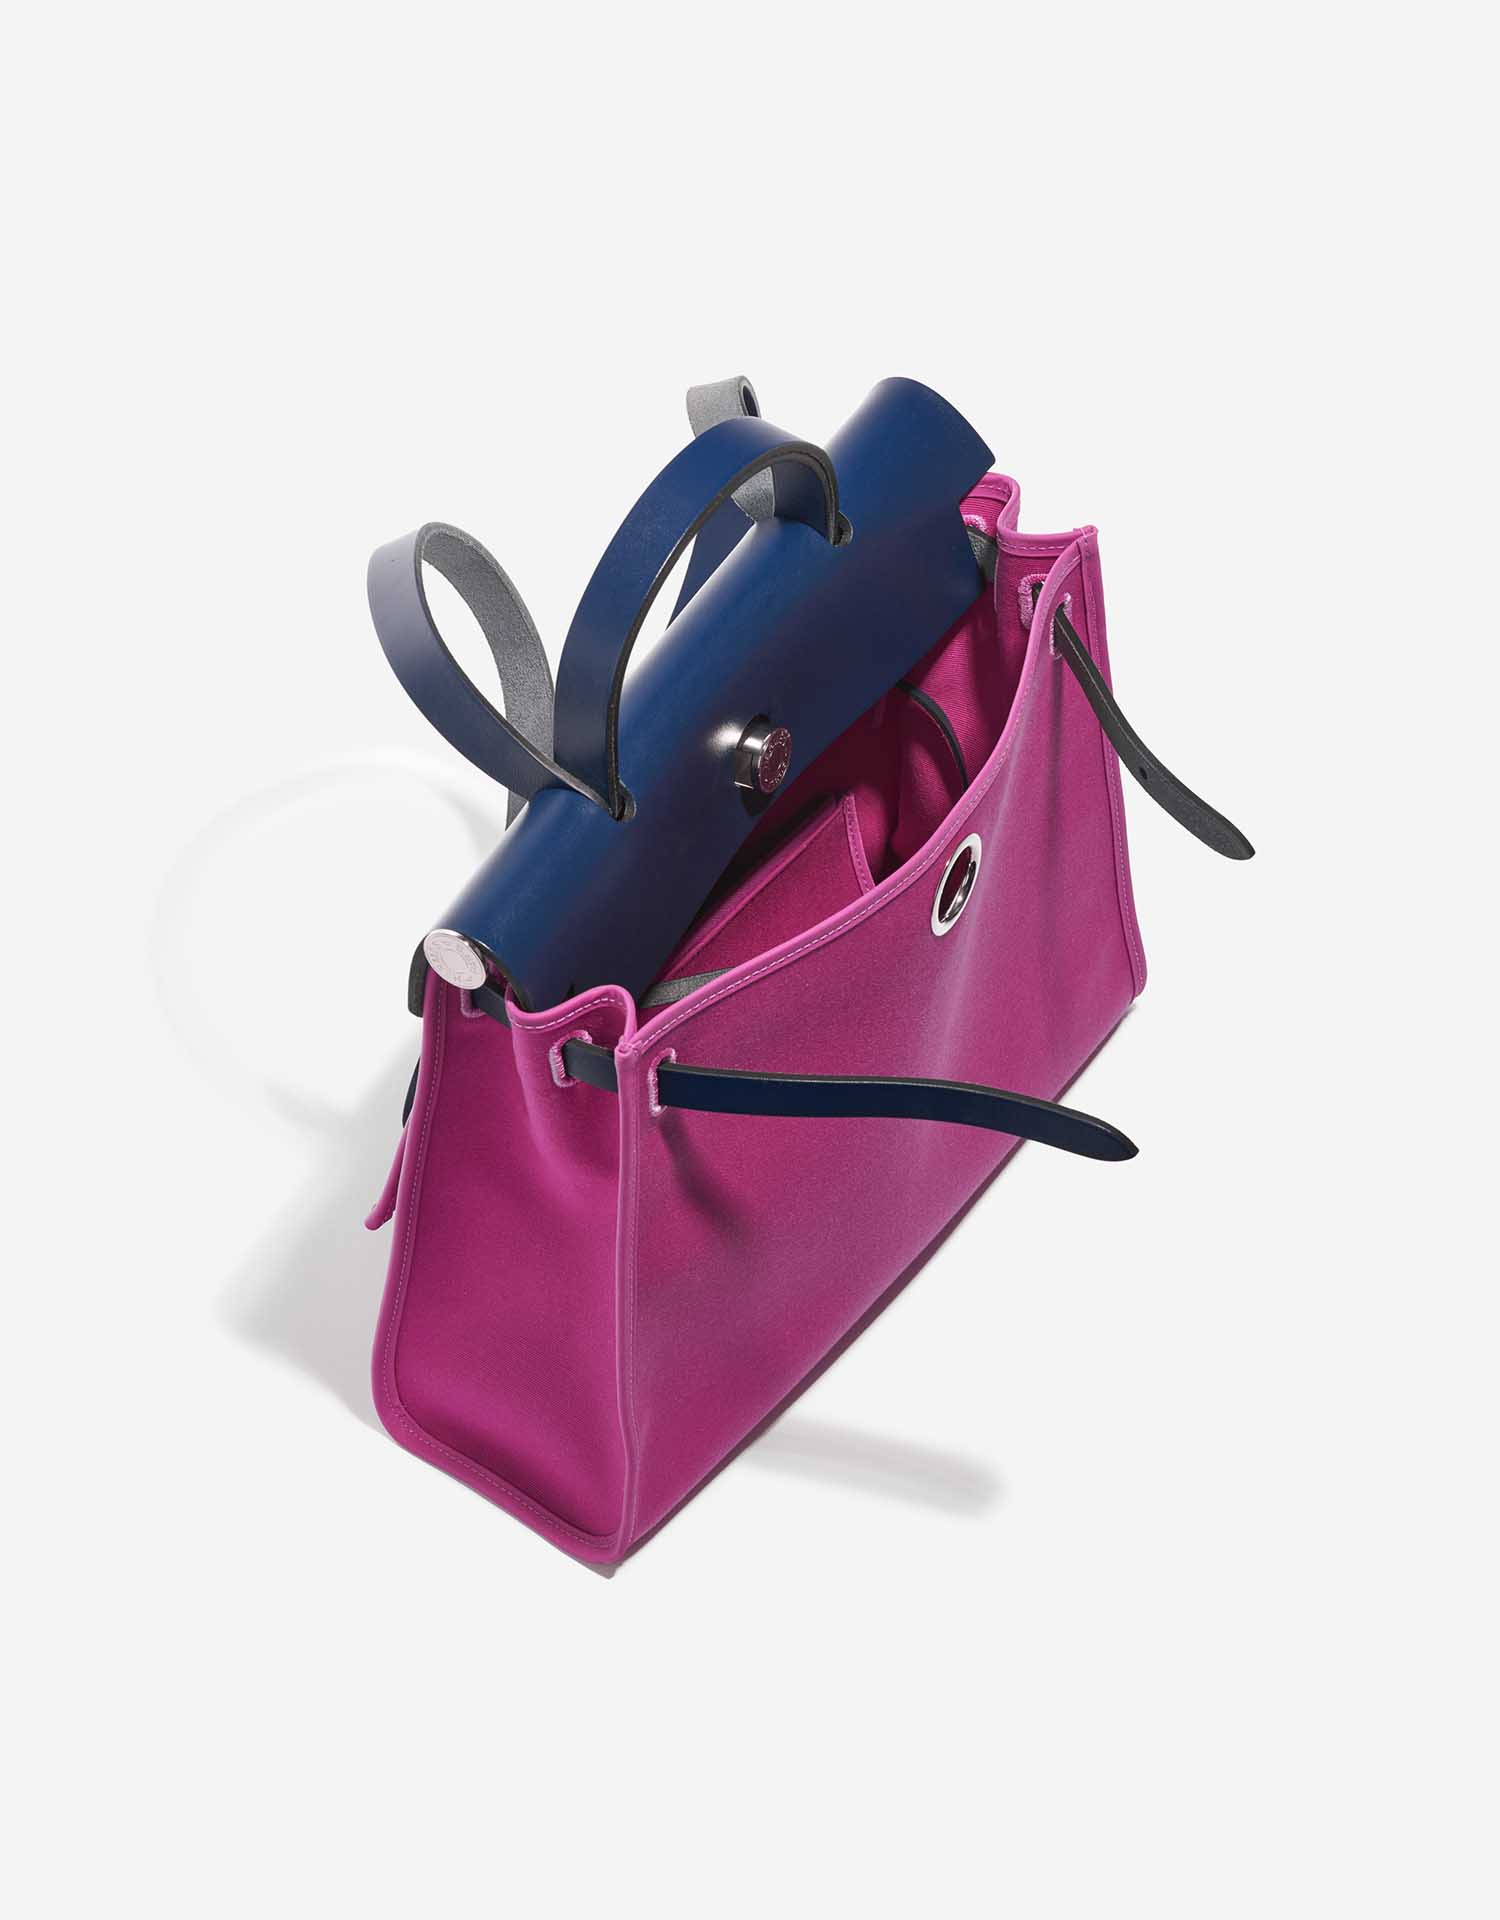 Gebrauchte Hermès Tasche Herbag 31 Vache Hunter / Toile Bleu Saphir / Magnolia Pink Inside | Verkaufen Sie Ihre Designer-Tasche auf Saclab.com